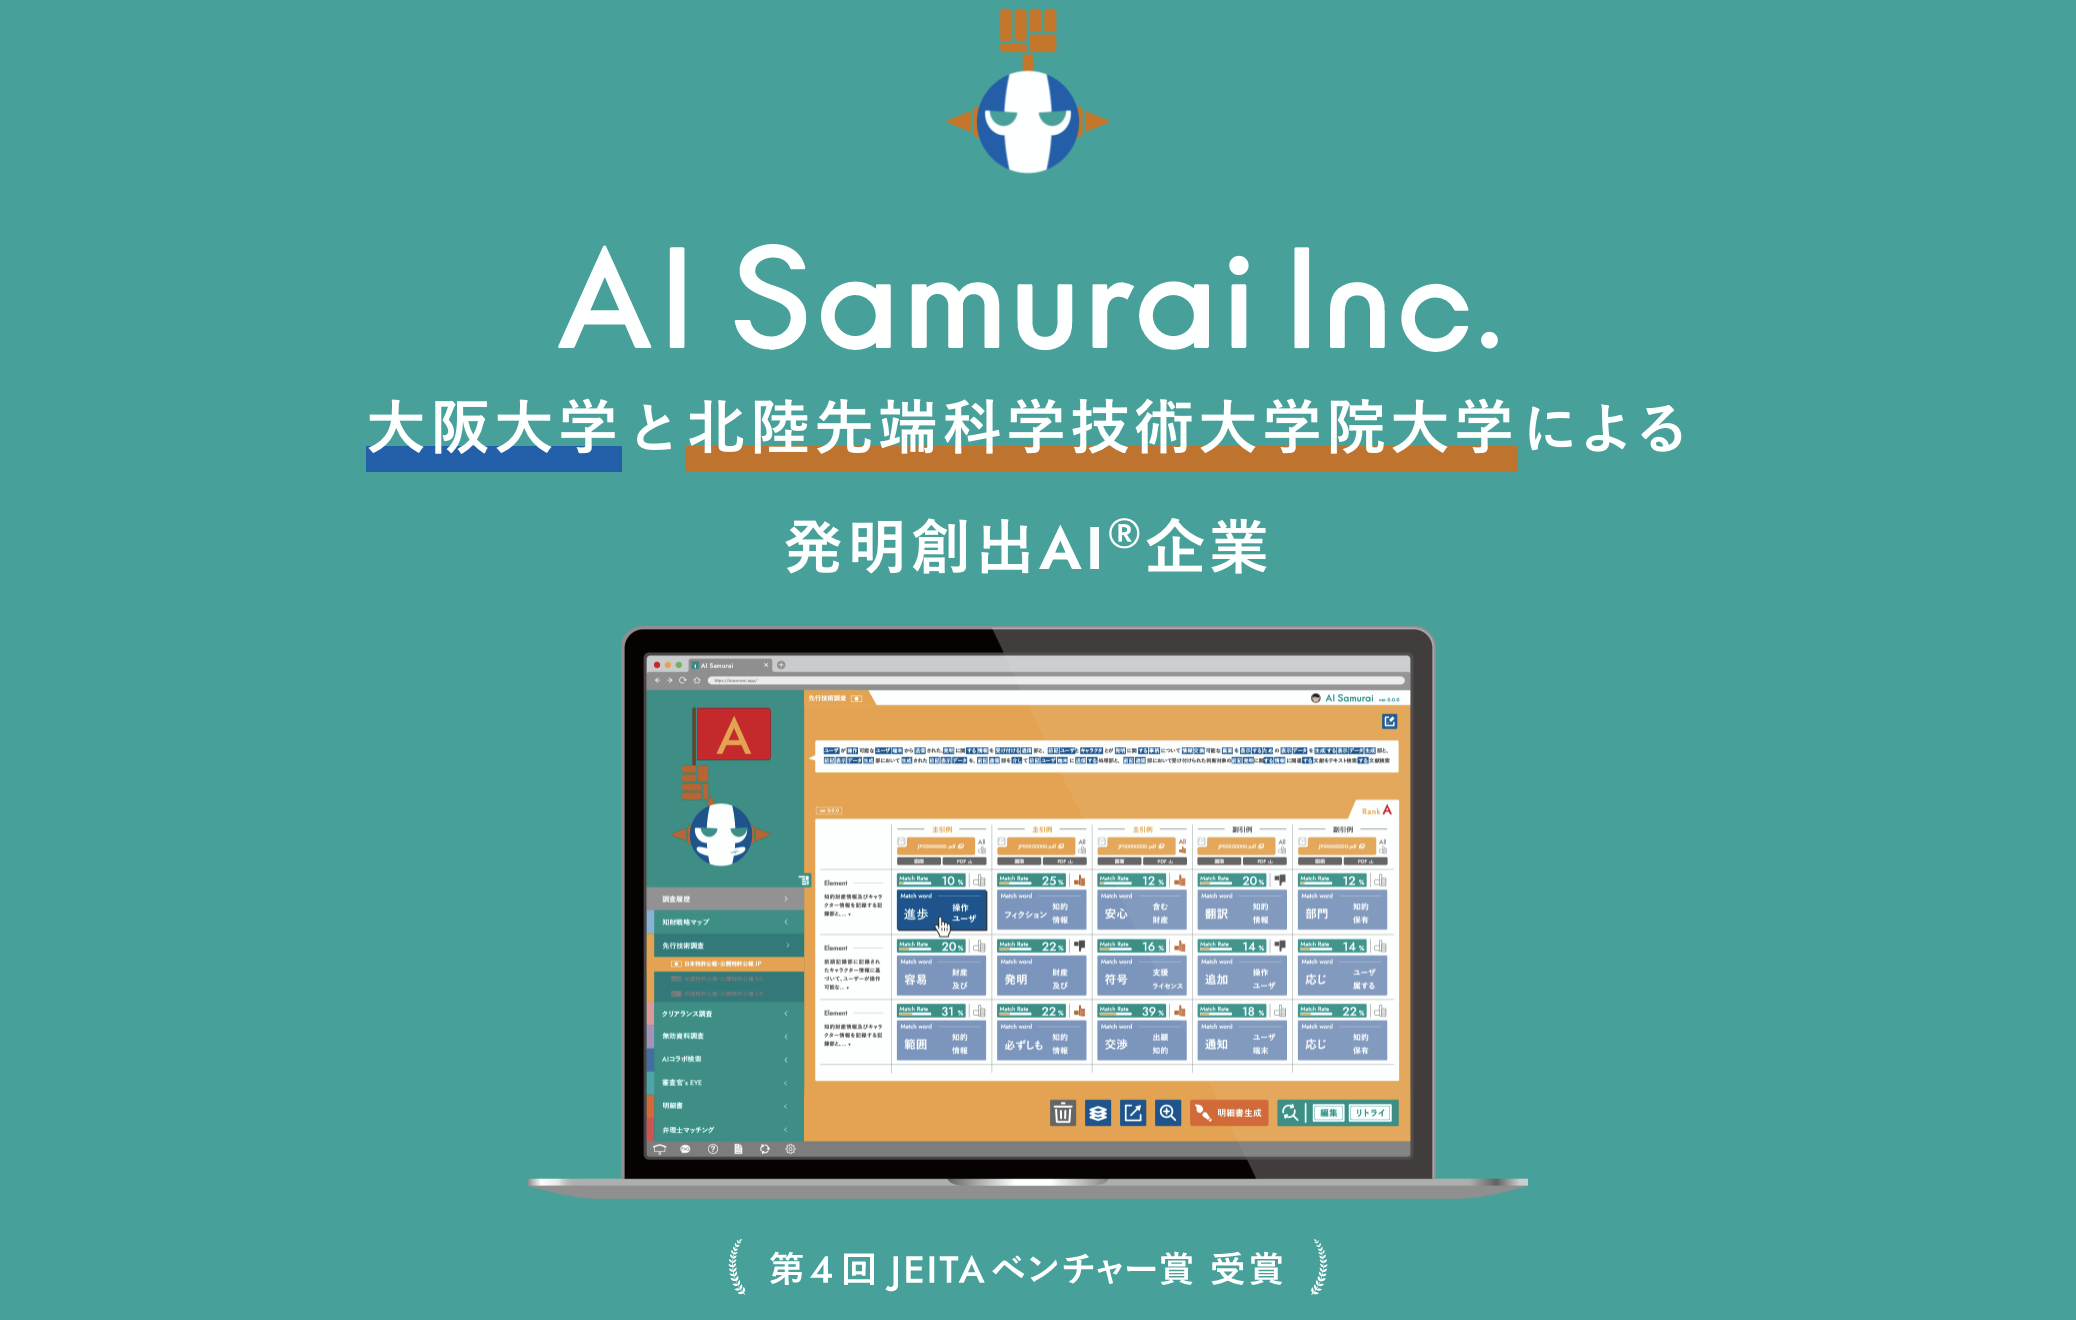 AI samurai 2